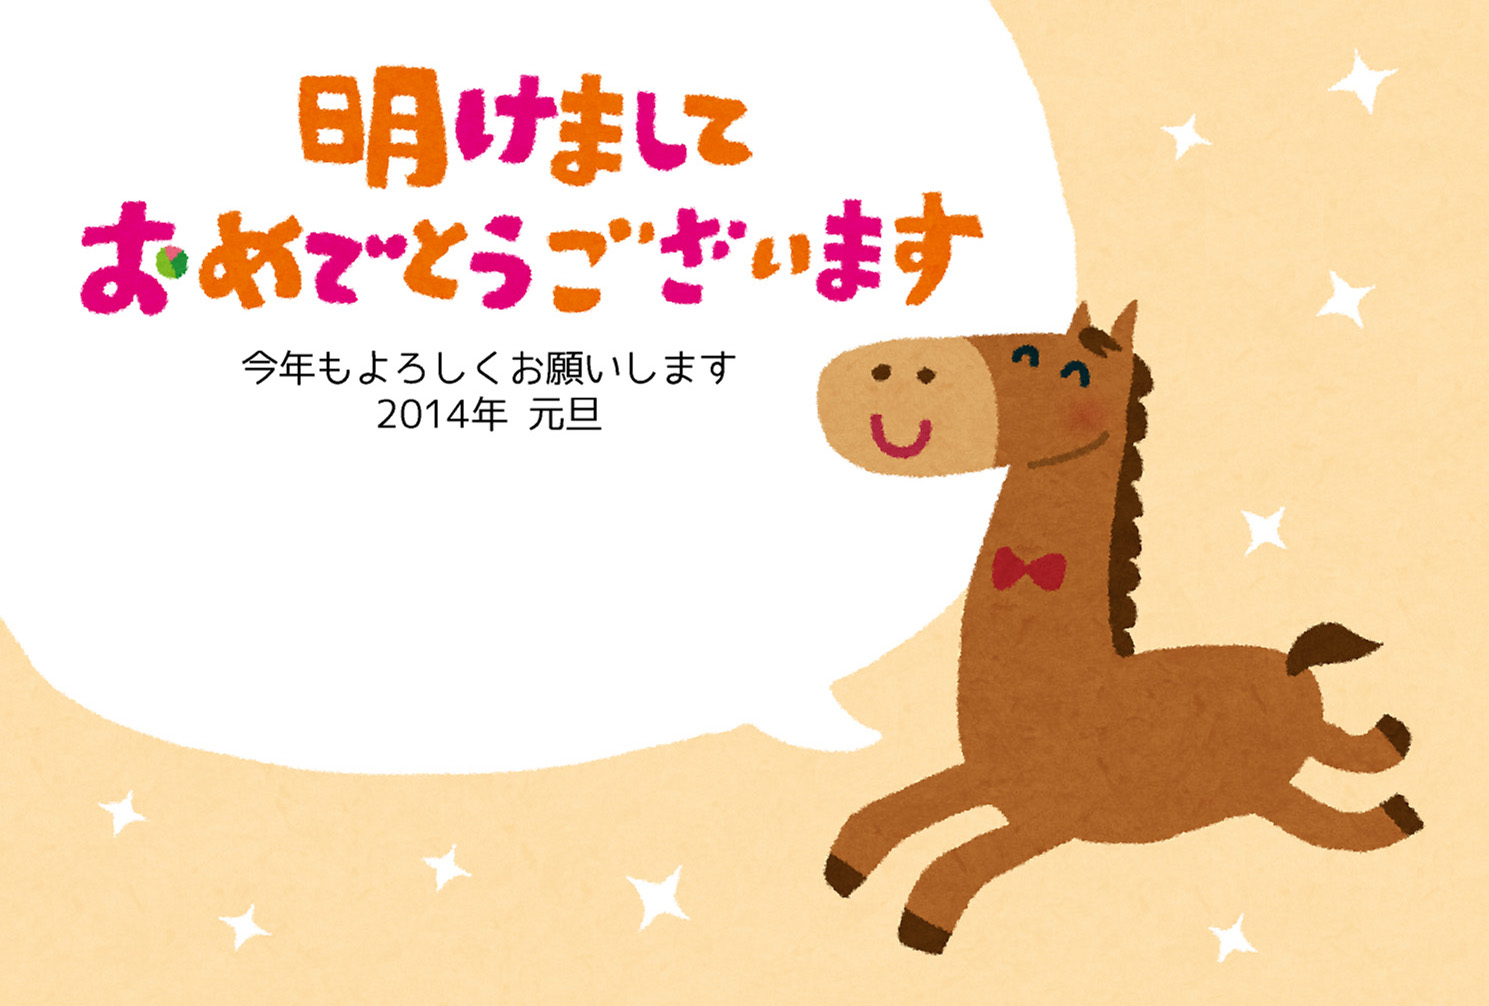 無料イラスト かわいいフリー素材集 年賀状のテンプレート 走る馬